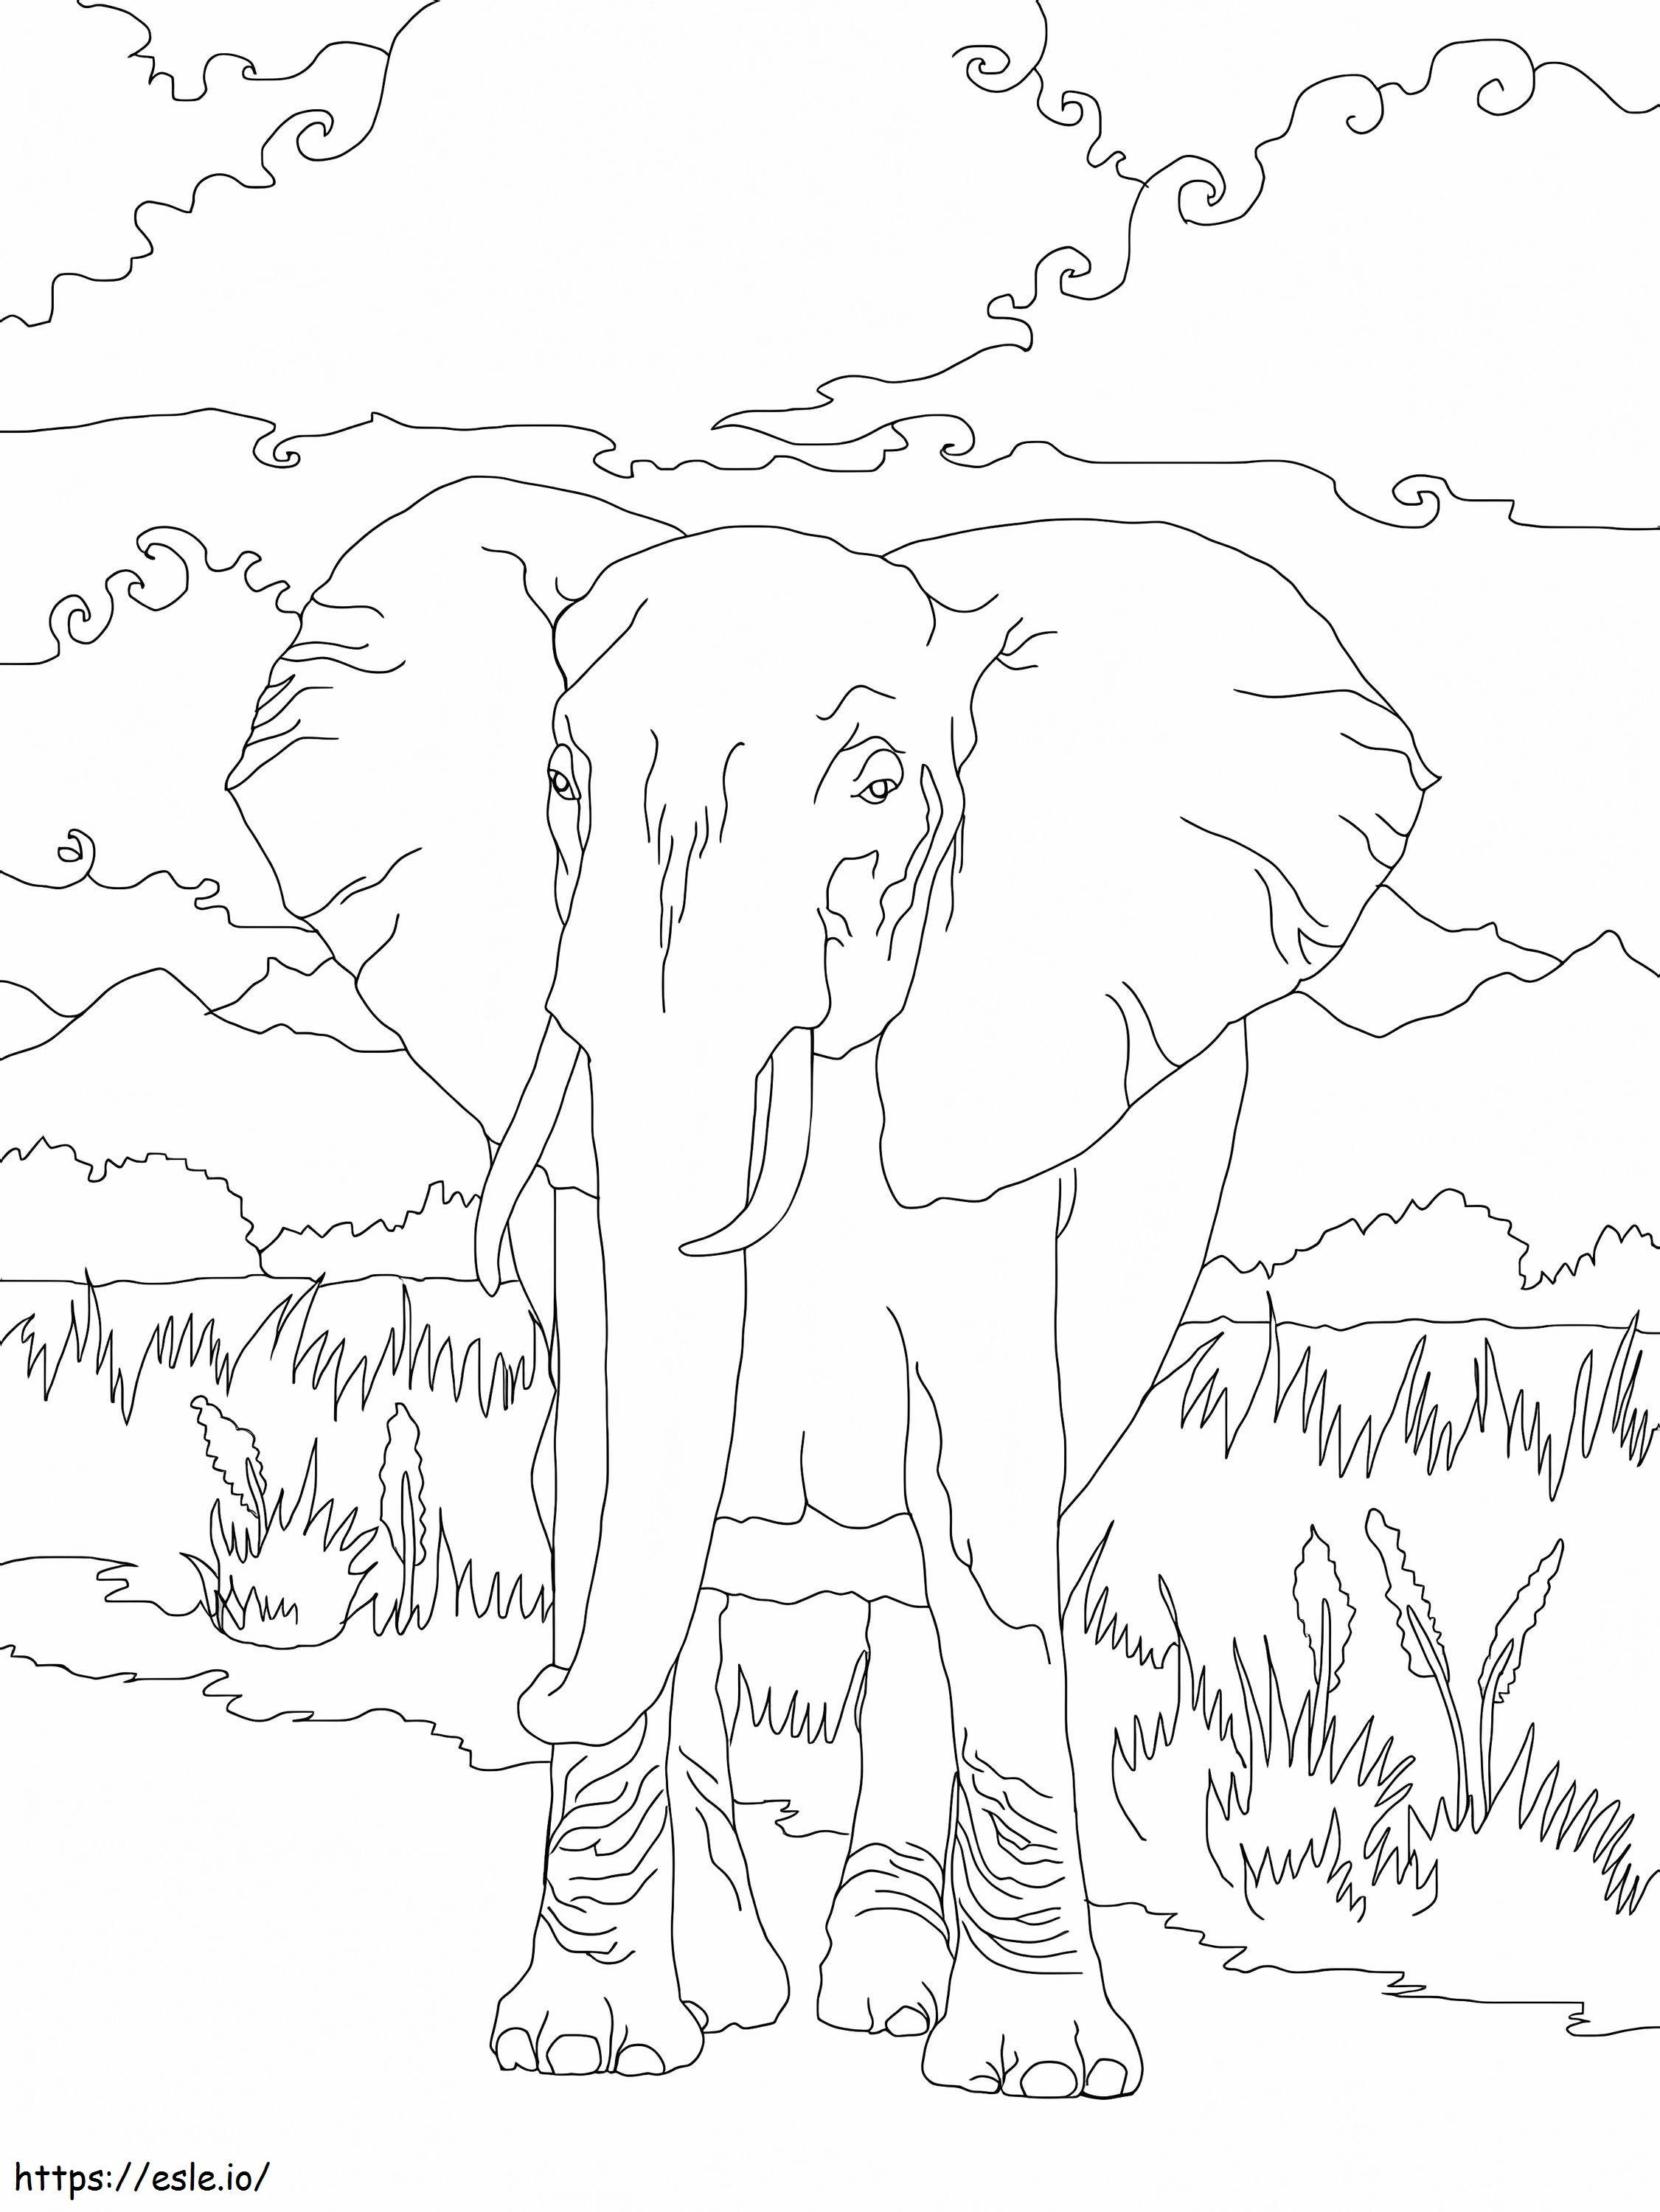 Elefante selvatico africano 1 da colorare